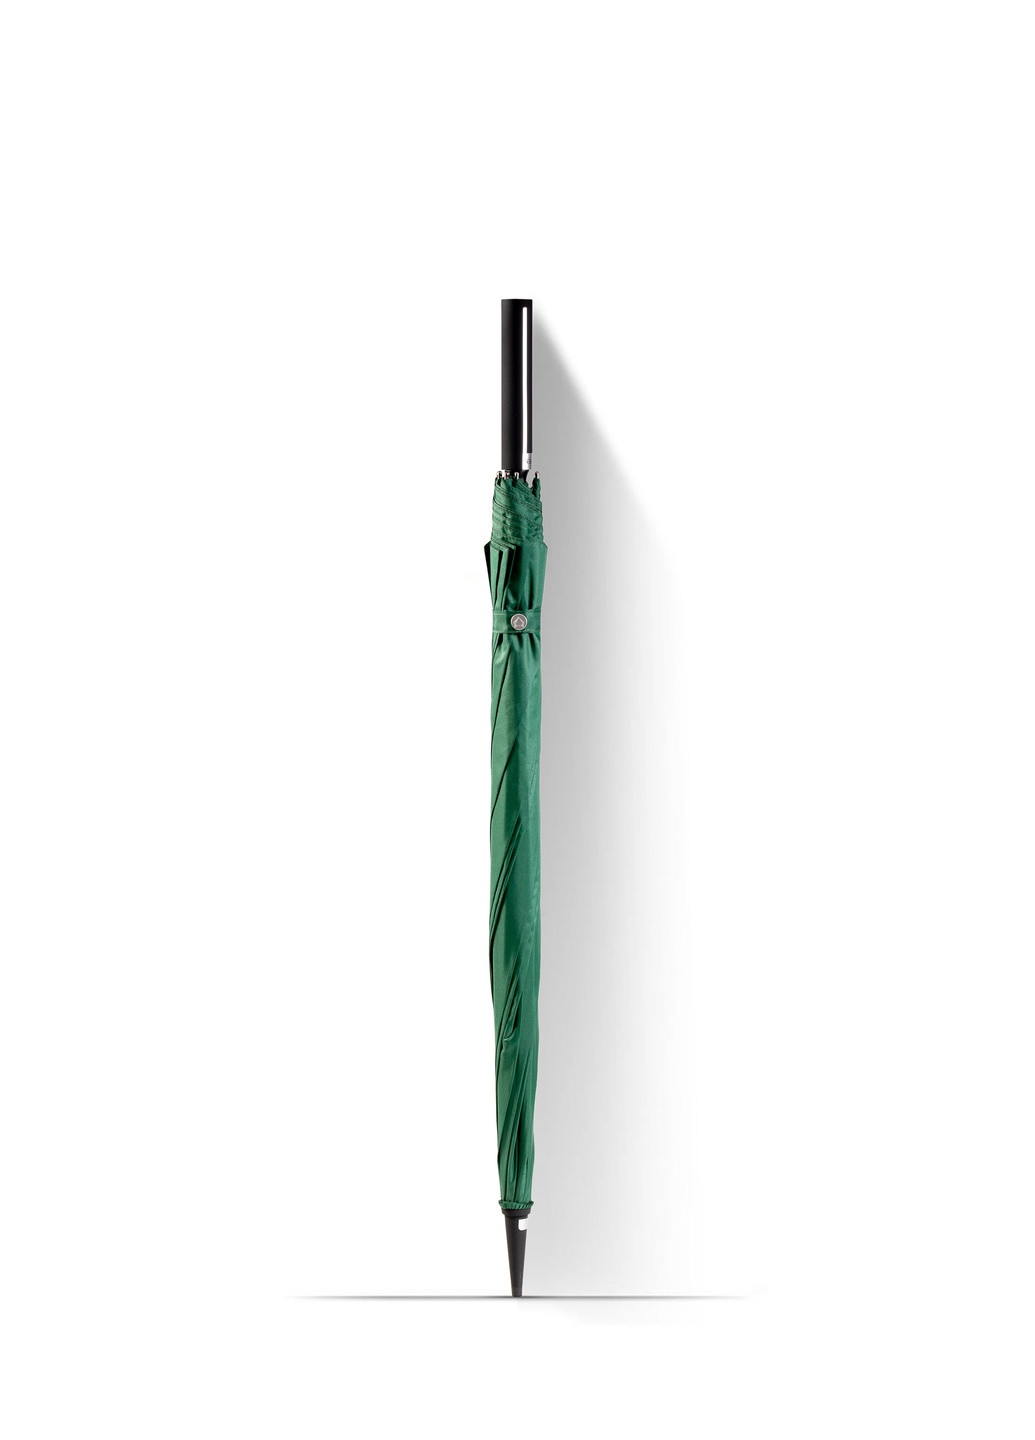 Зонт трость 10-ти спицевый с прорезиненной ручкой Soft Touch зеленый Krago (258994526)